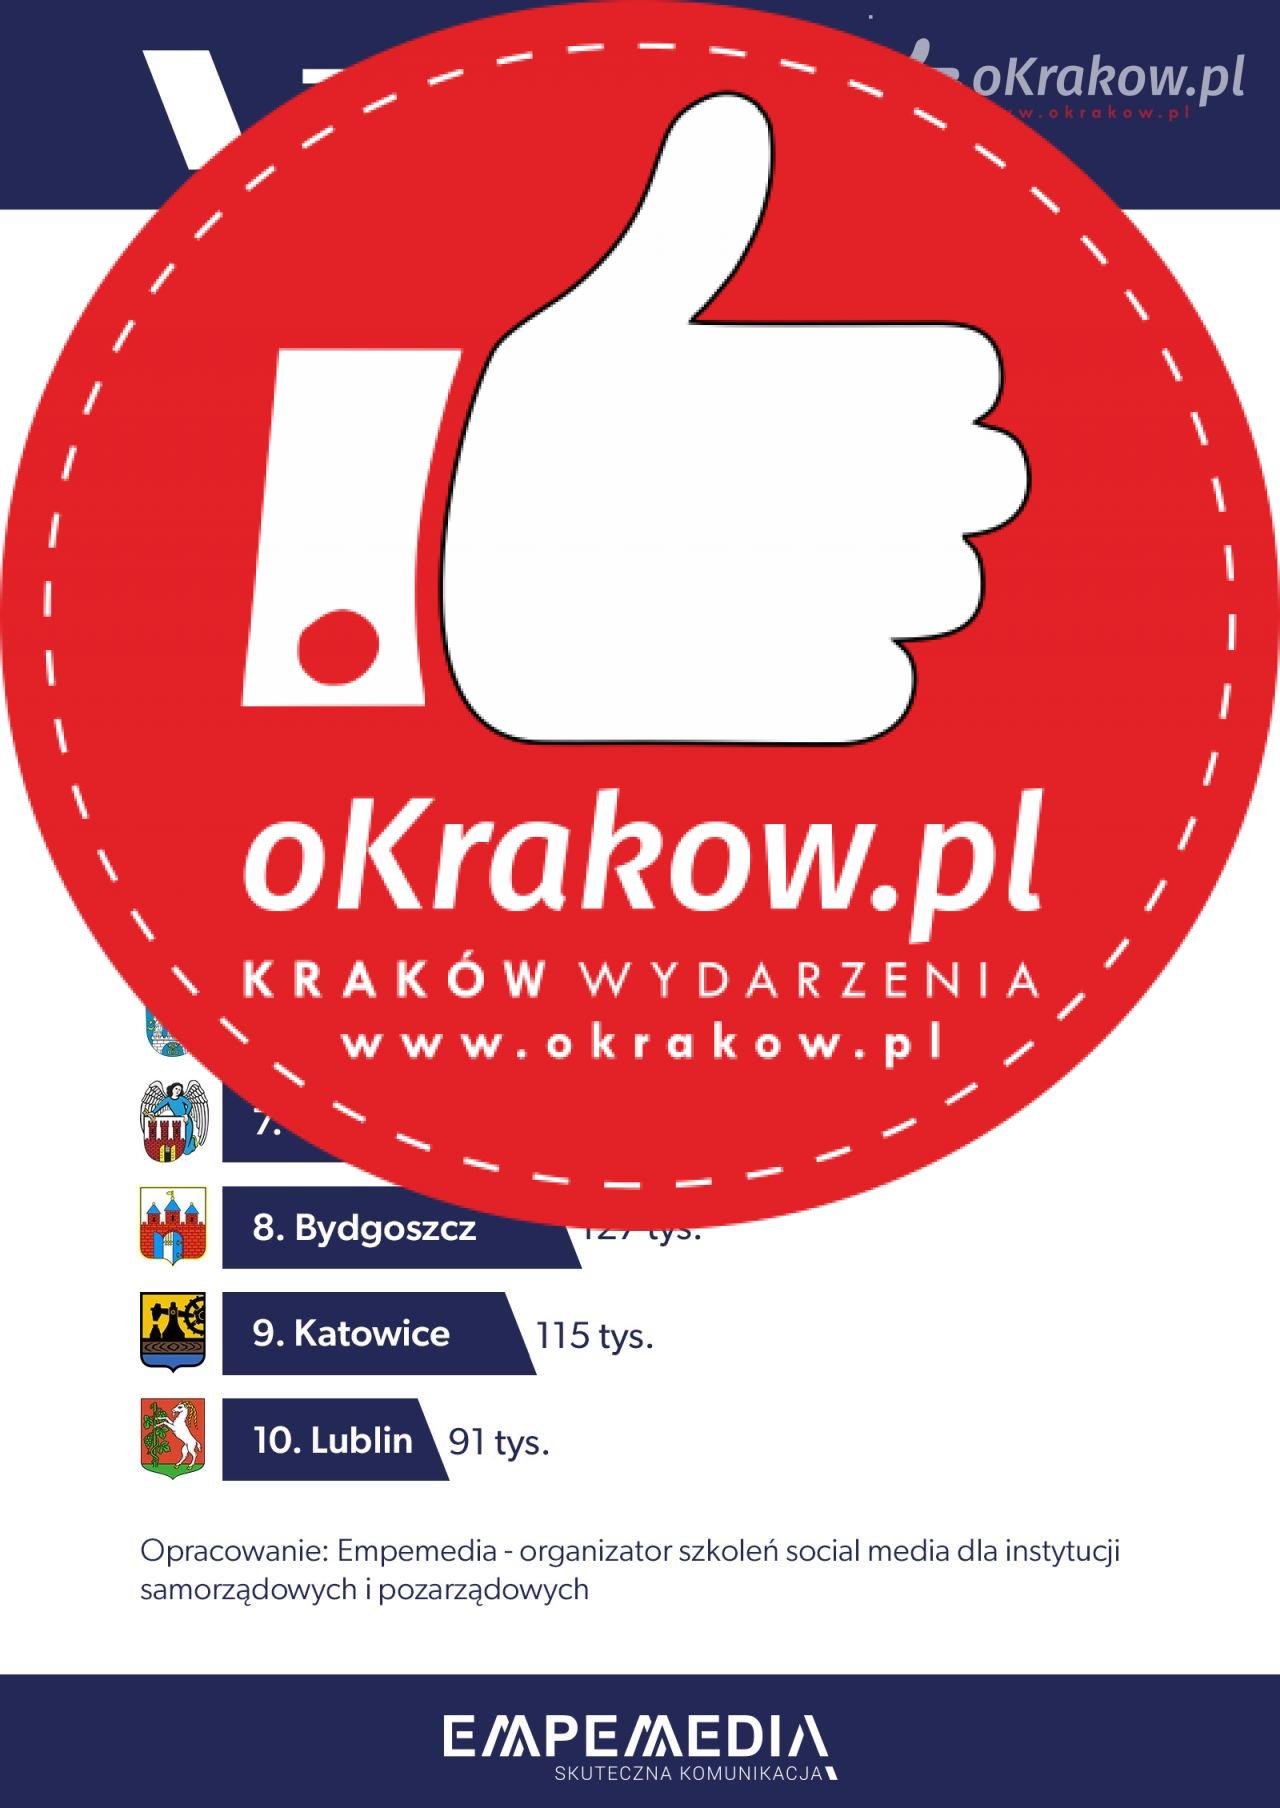 infografika top10 light - Top 10 - Kraków przed Warszawą wśród najpopularniejszych miast na Facebooku